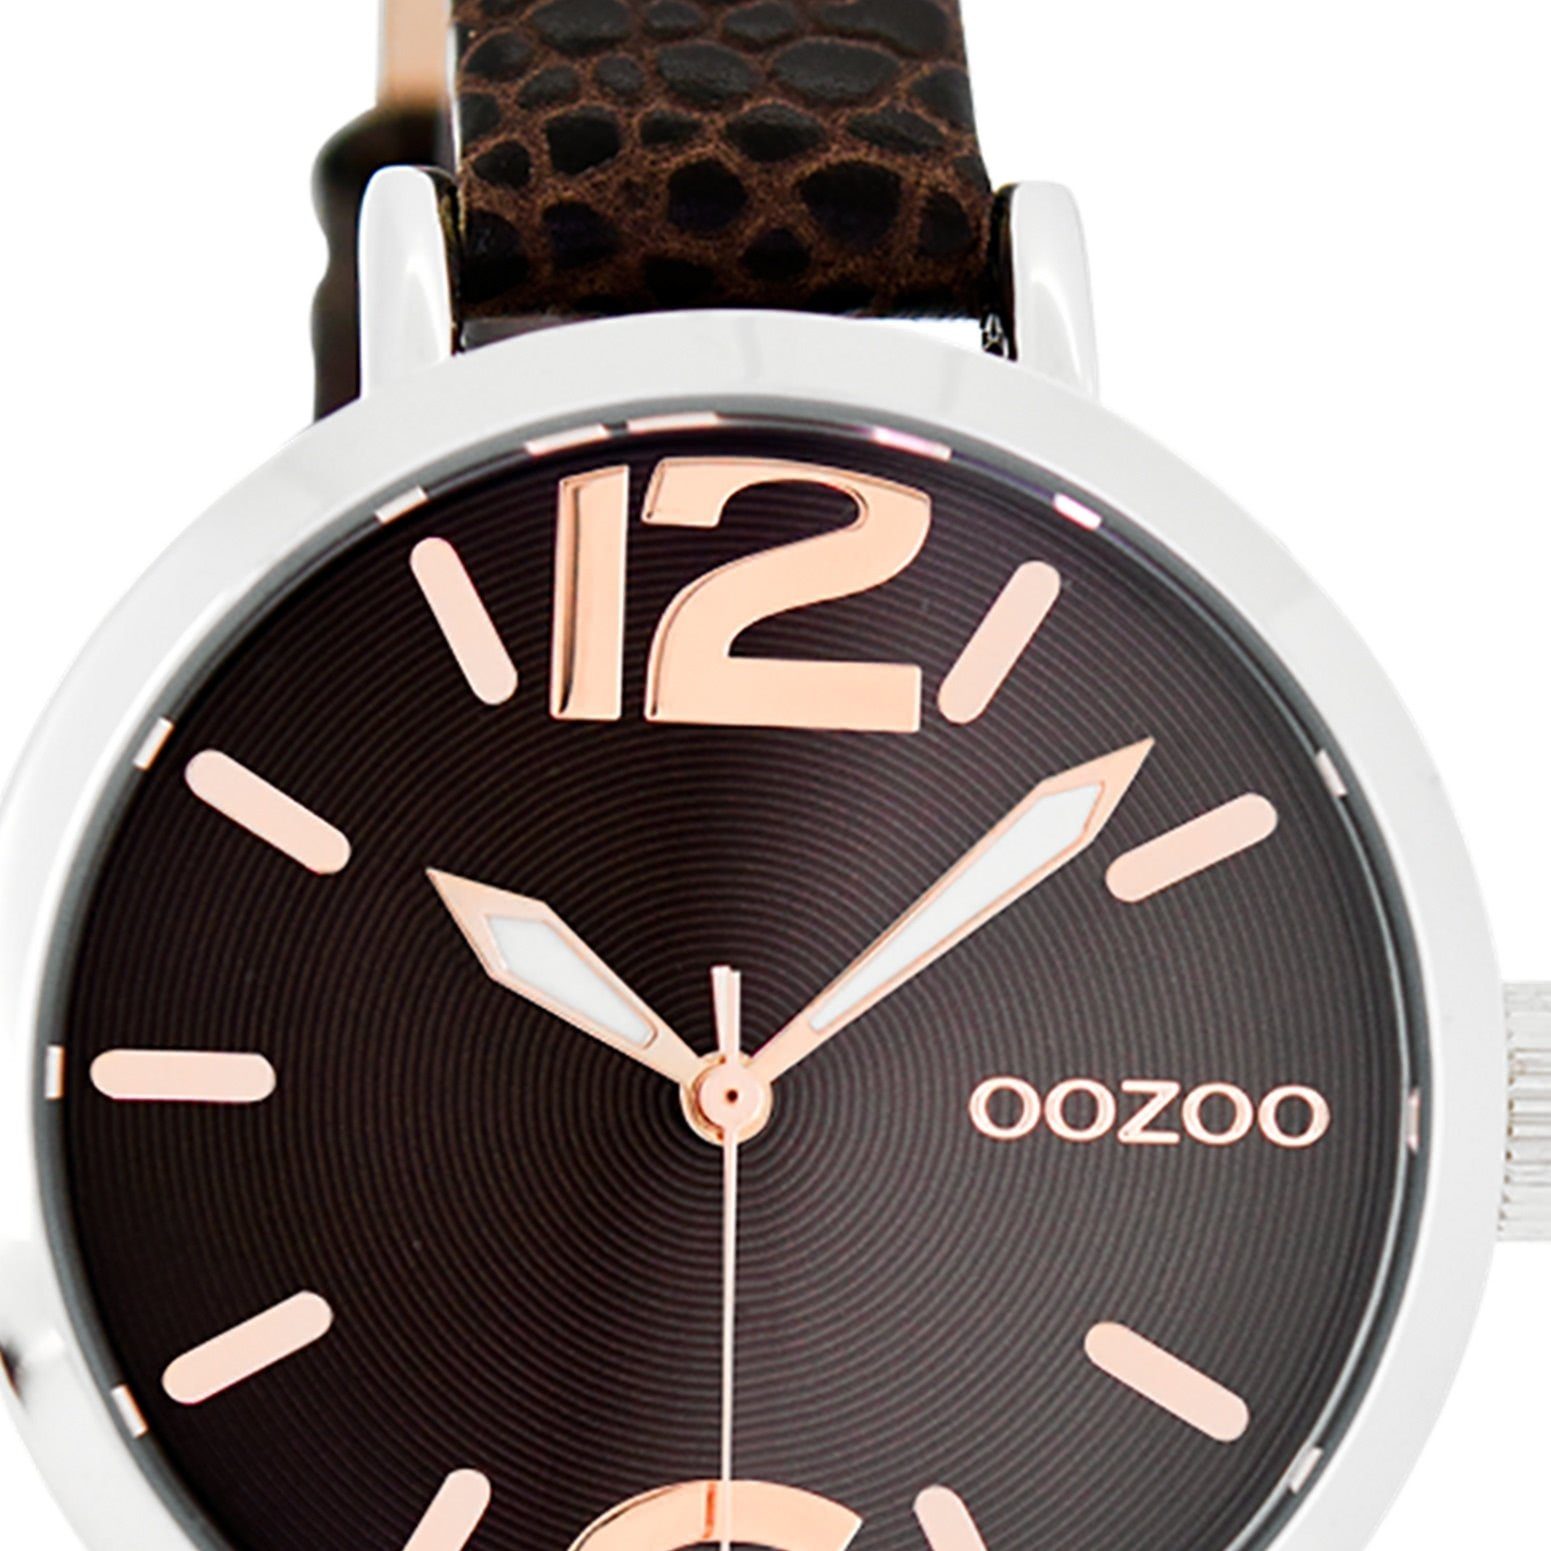 OOZOO Quarzuhr Oozoo Armbanduhr Jugend JR silber, Jugenduhr rund, mittel  (ca. 35mm) Lederarmband, Fashion-Style